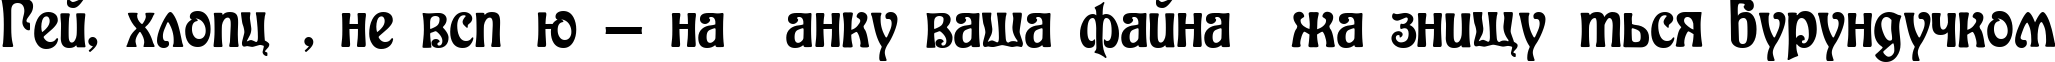 Пример написания шрифтом Baldur текста на украинском